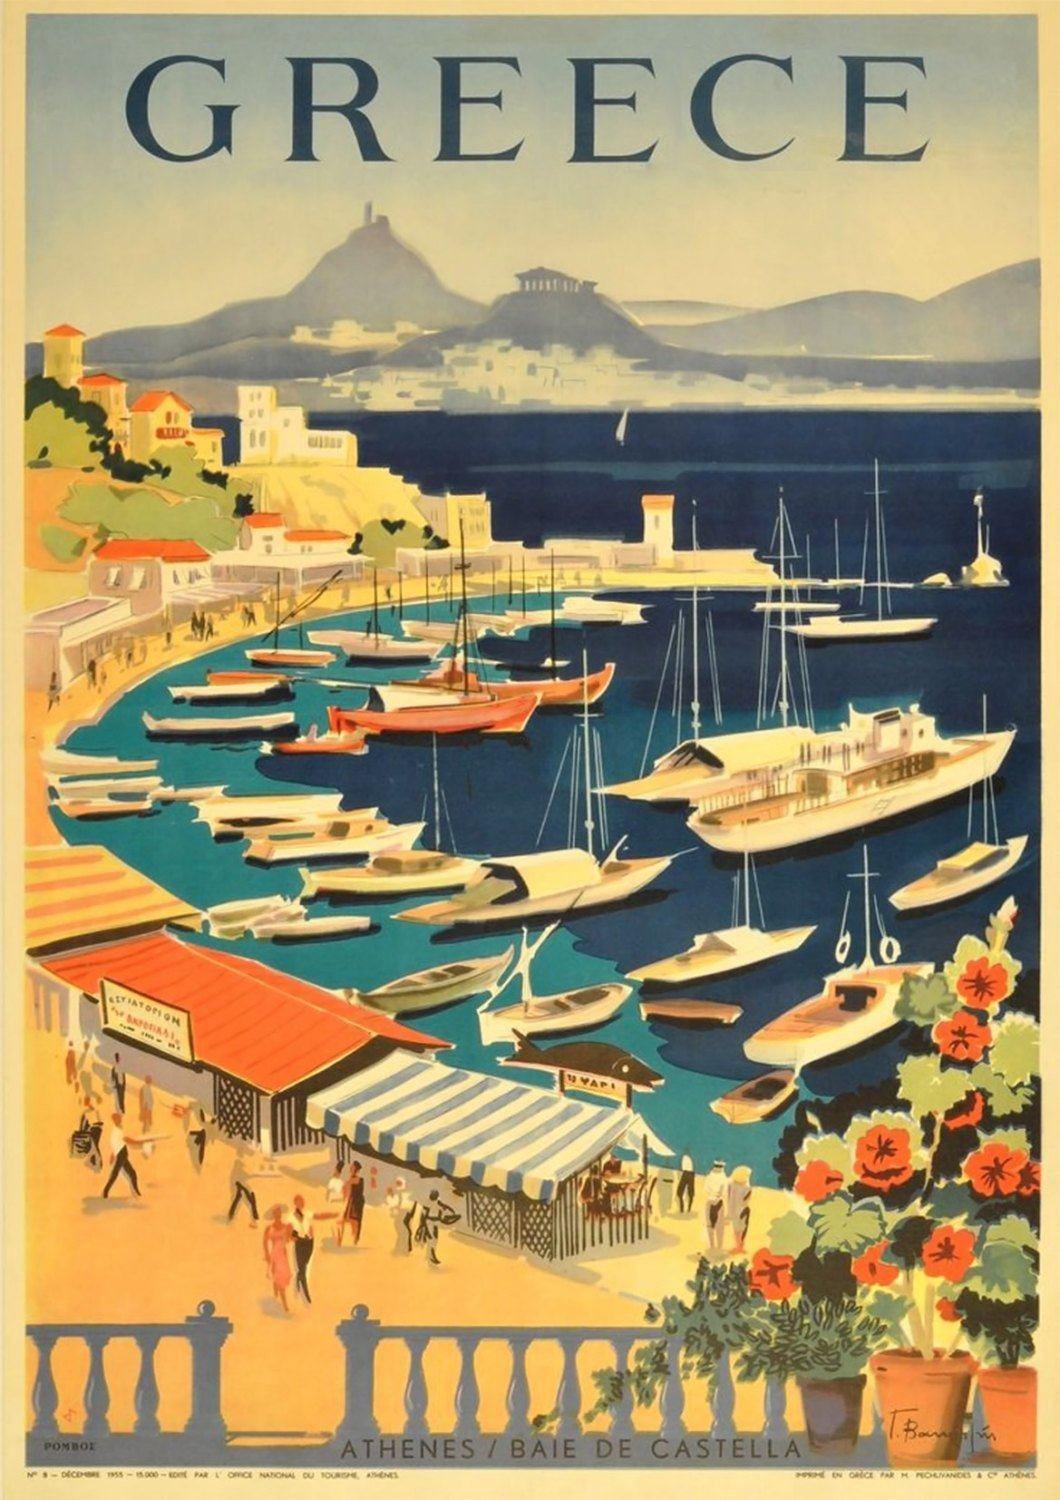 GREECE TOURISM POSTER: Vintage Greek Athens Bay Travel Advert Print - Pimlico Prints